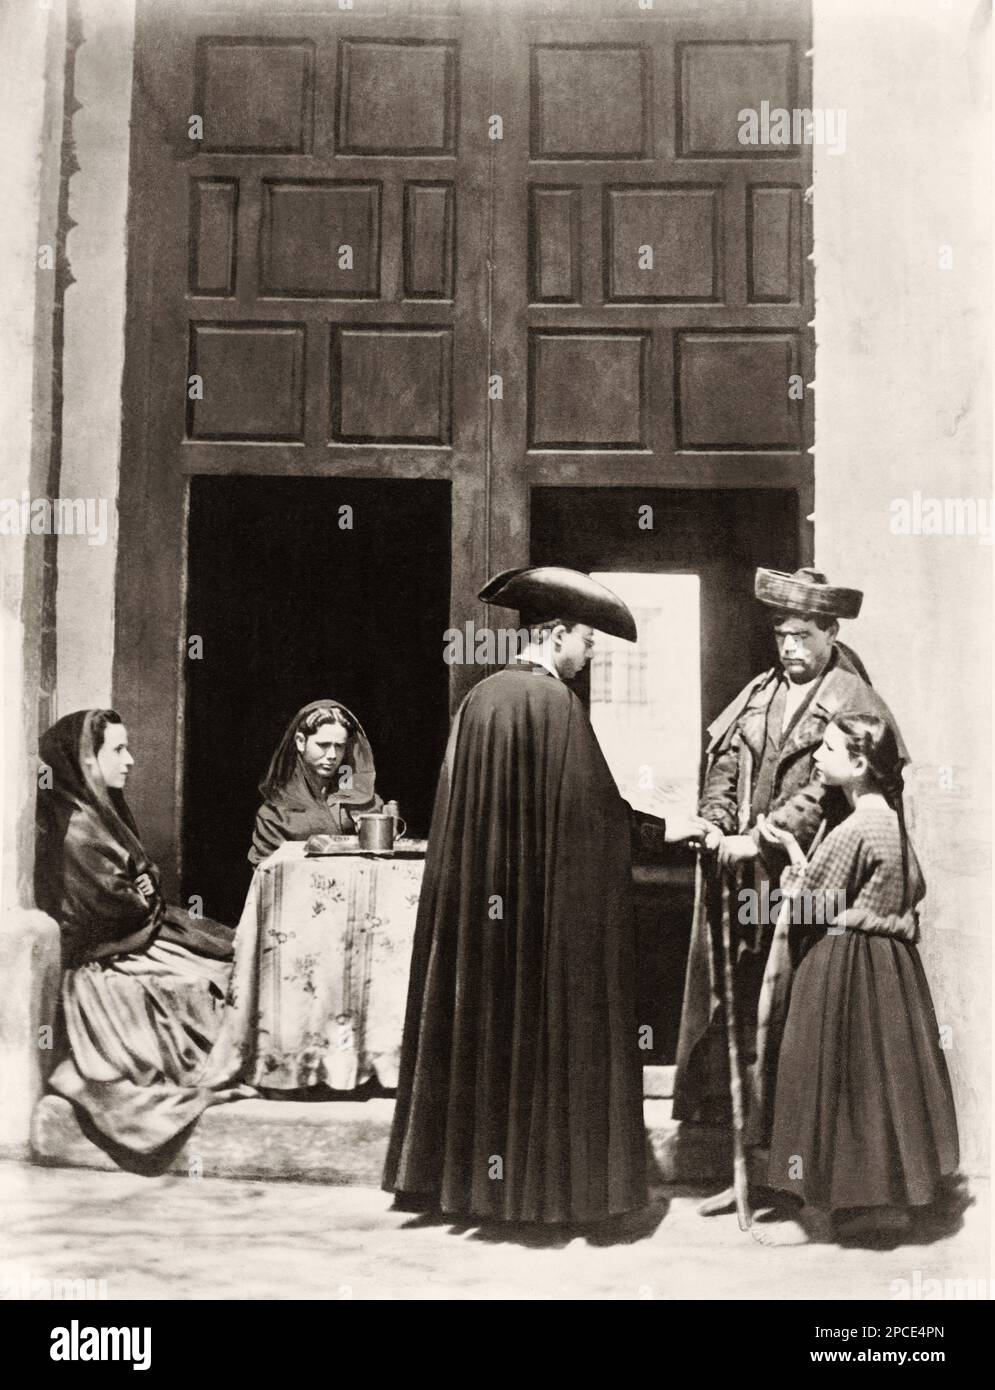 1880 ca,  CORDOBA , ANDALUSIA ,  SPAIN  : On a Church door -  folkloristic dress  . Photo by J. Laurent , Madrid -  SPAGNA  - FOTO STORICHE - HISTORY PHOTOS - FOLKLORE -    - GEOGRAFIA - GEOGRAPHY -  OTTOCENTO - XIX CENTURY - 800's - '800 - donna - donne in costume popolare - folkloristico - popolane - beggars - sulla porta di una CHIESA - povero - poveri - poors - elemosina - questua - prete - priest - RELIGIONE - RELIGION - CORDOVA - Andalusia----  Archivio GBB Stock Photo